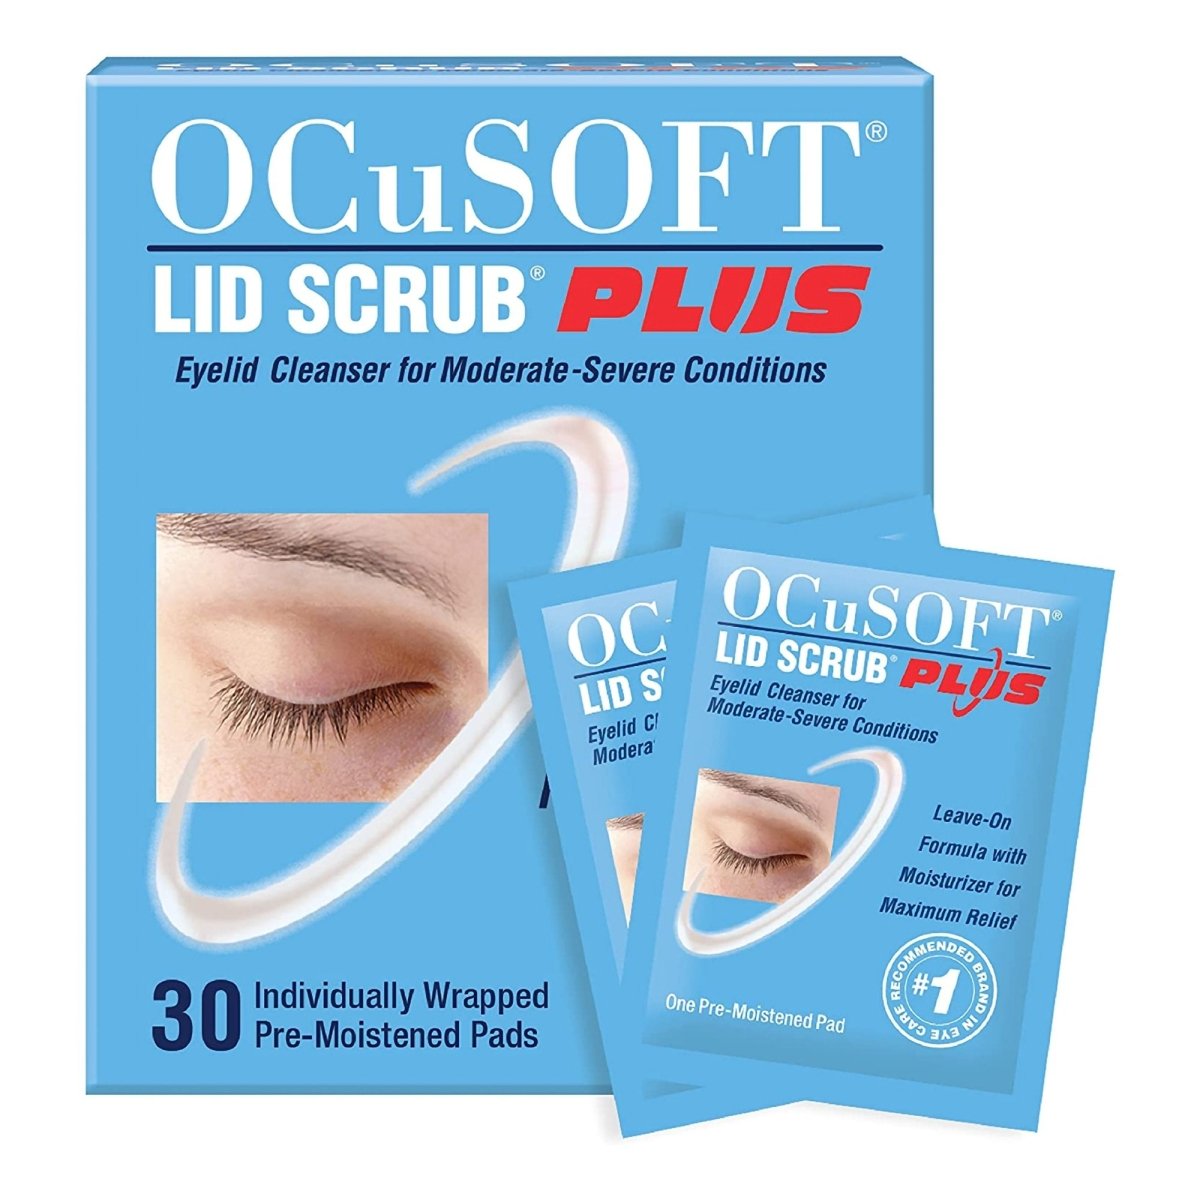 Ocusoft Lid Scrub Plus Eyelid Cleanser - 713995_BX - 1